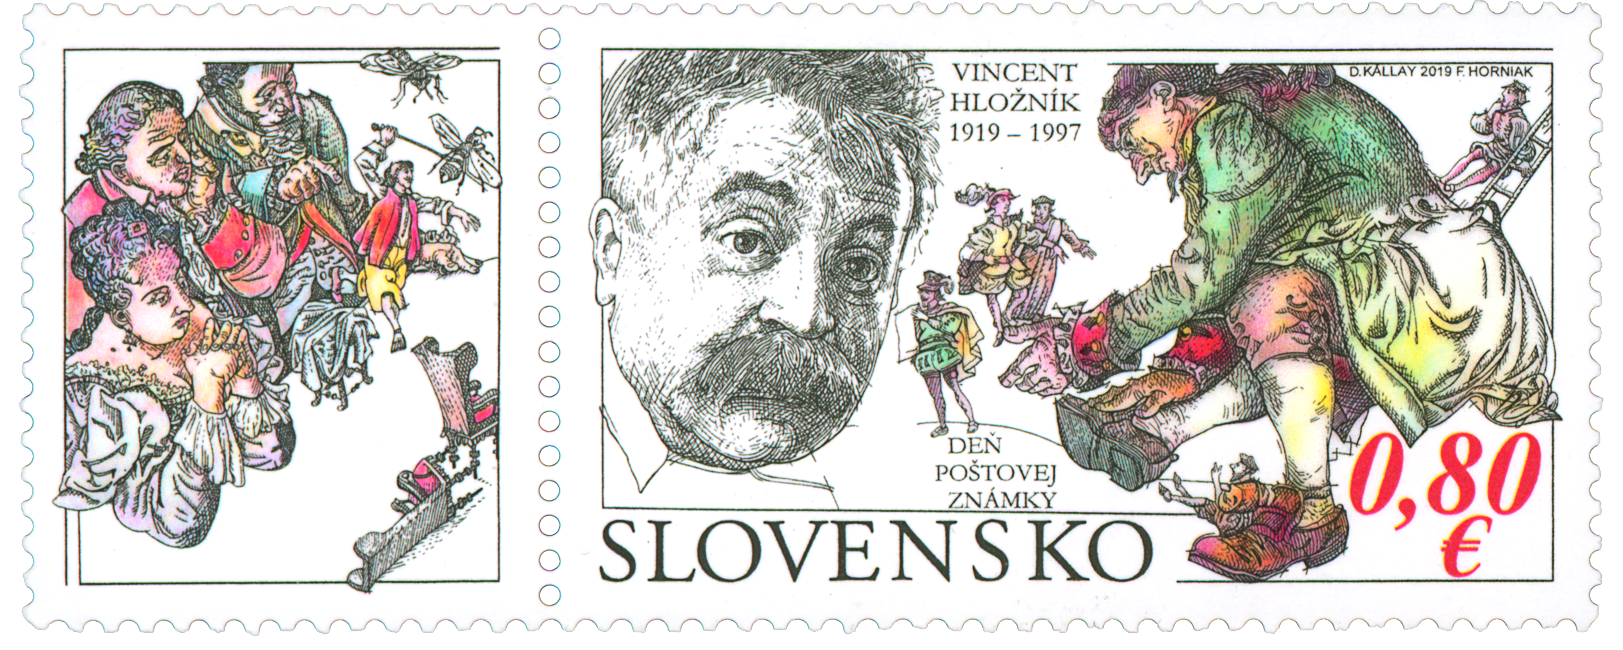 704 - Postage Stamp Day: Vincent Hložník (1919 – 1997)